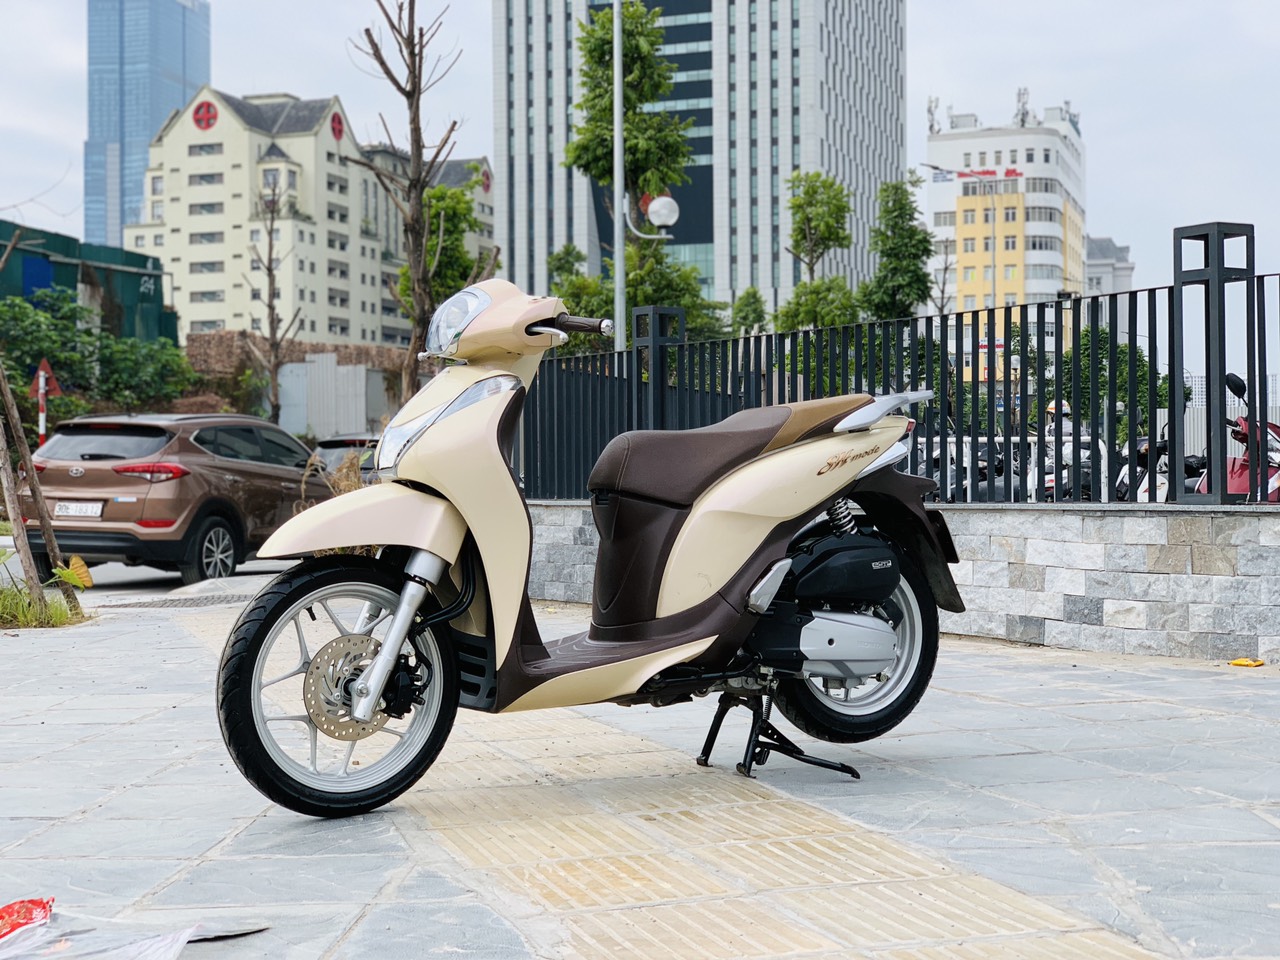 Hình ảnh và giá bán chính thức xe Honda SH Mode 2016 2017 tại Việt Nam   Shop SH Sài Gòn